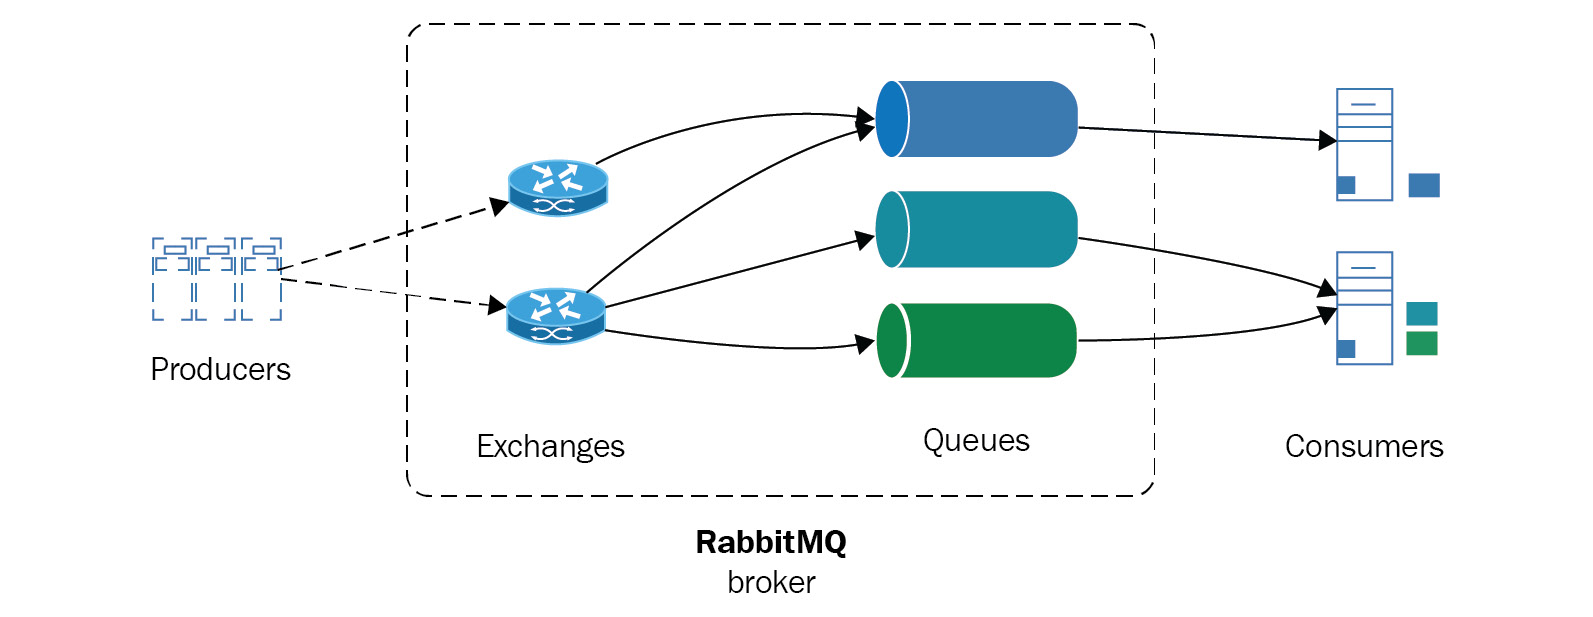 Figure 12.2: RabbitMQ architecture
